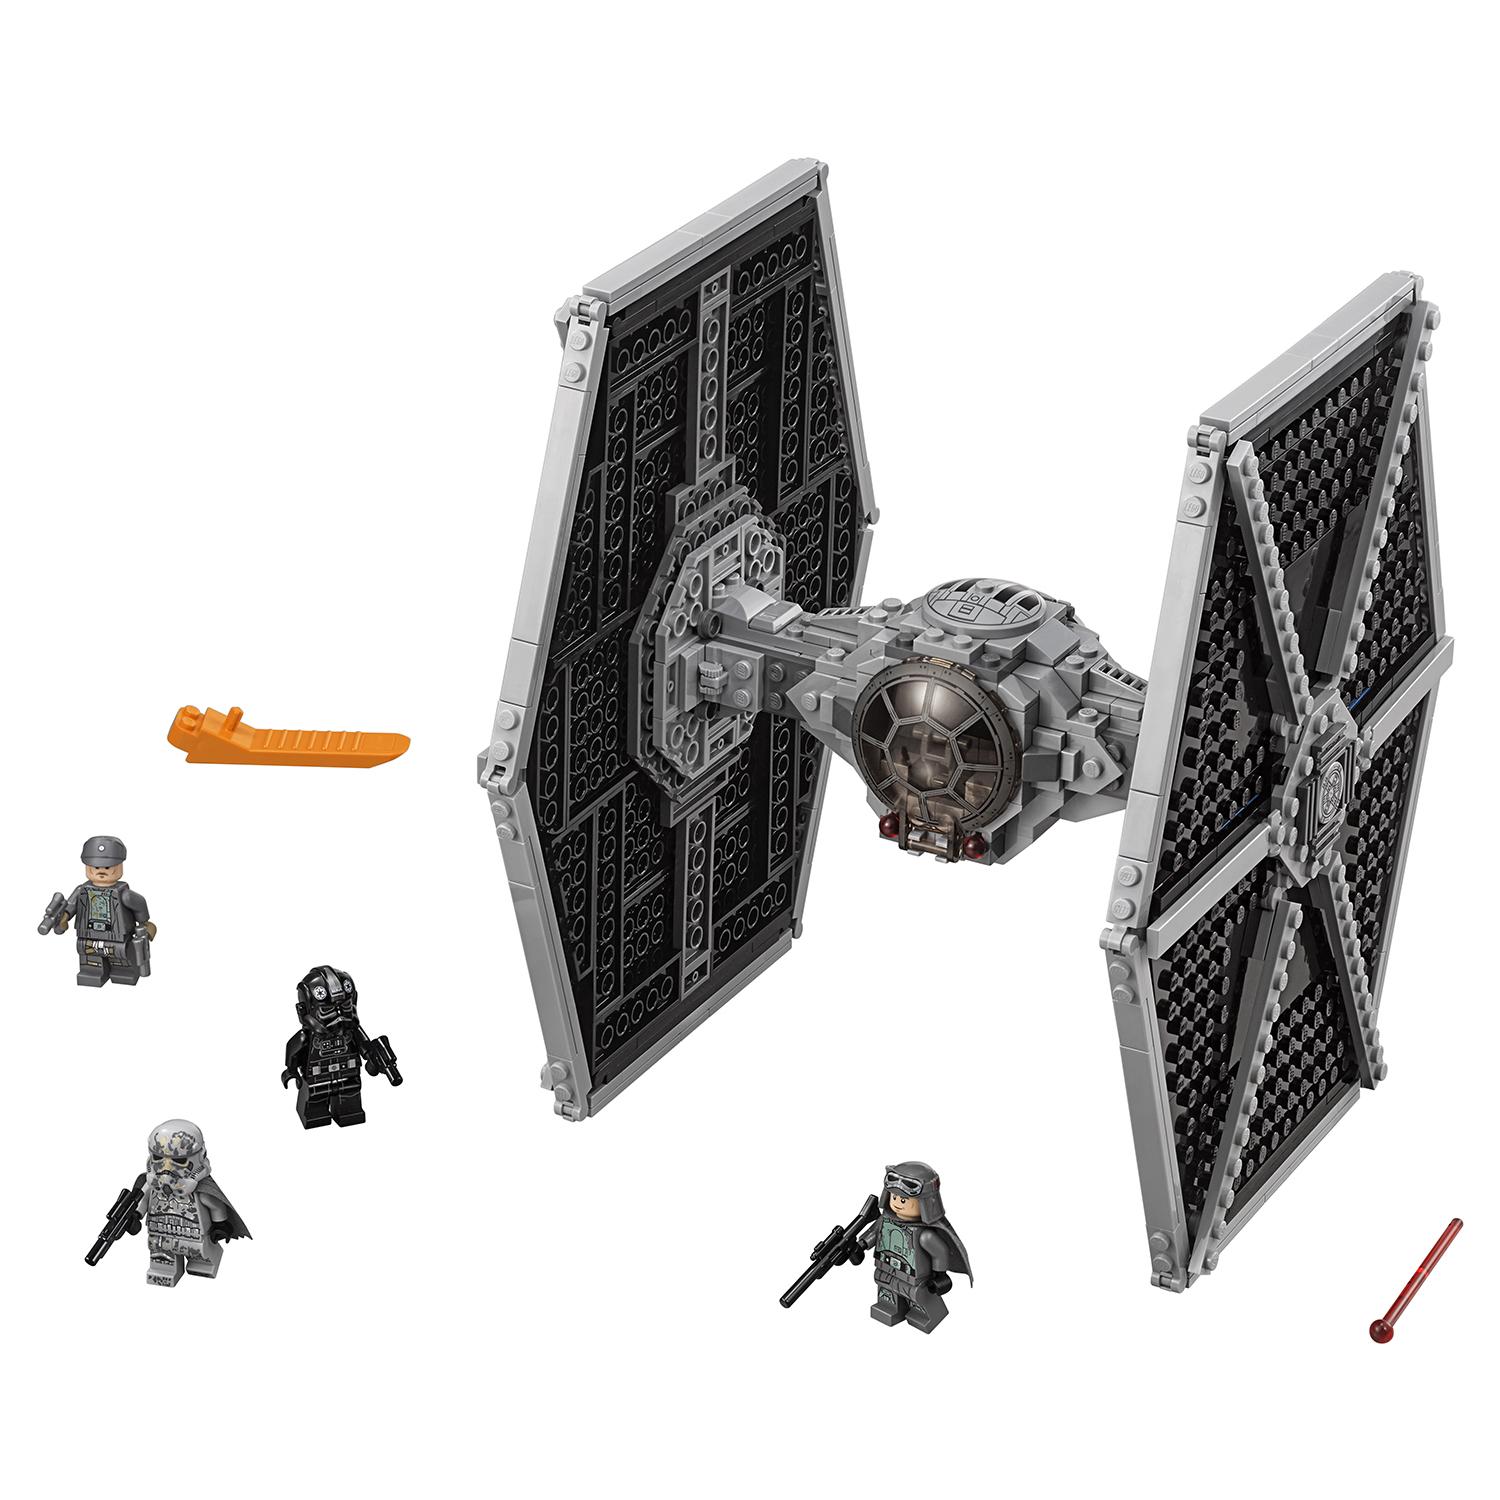 Lego Star Wars 75211 Имперский истребитель СИД